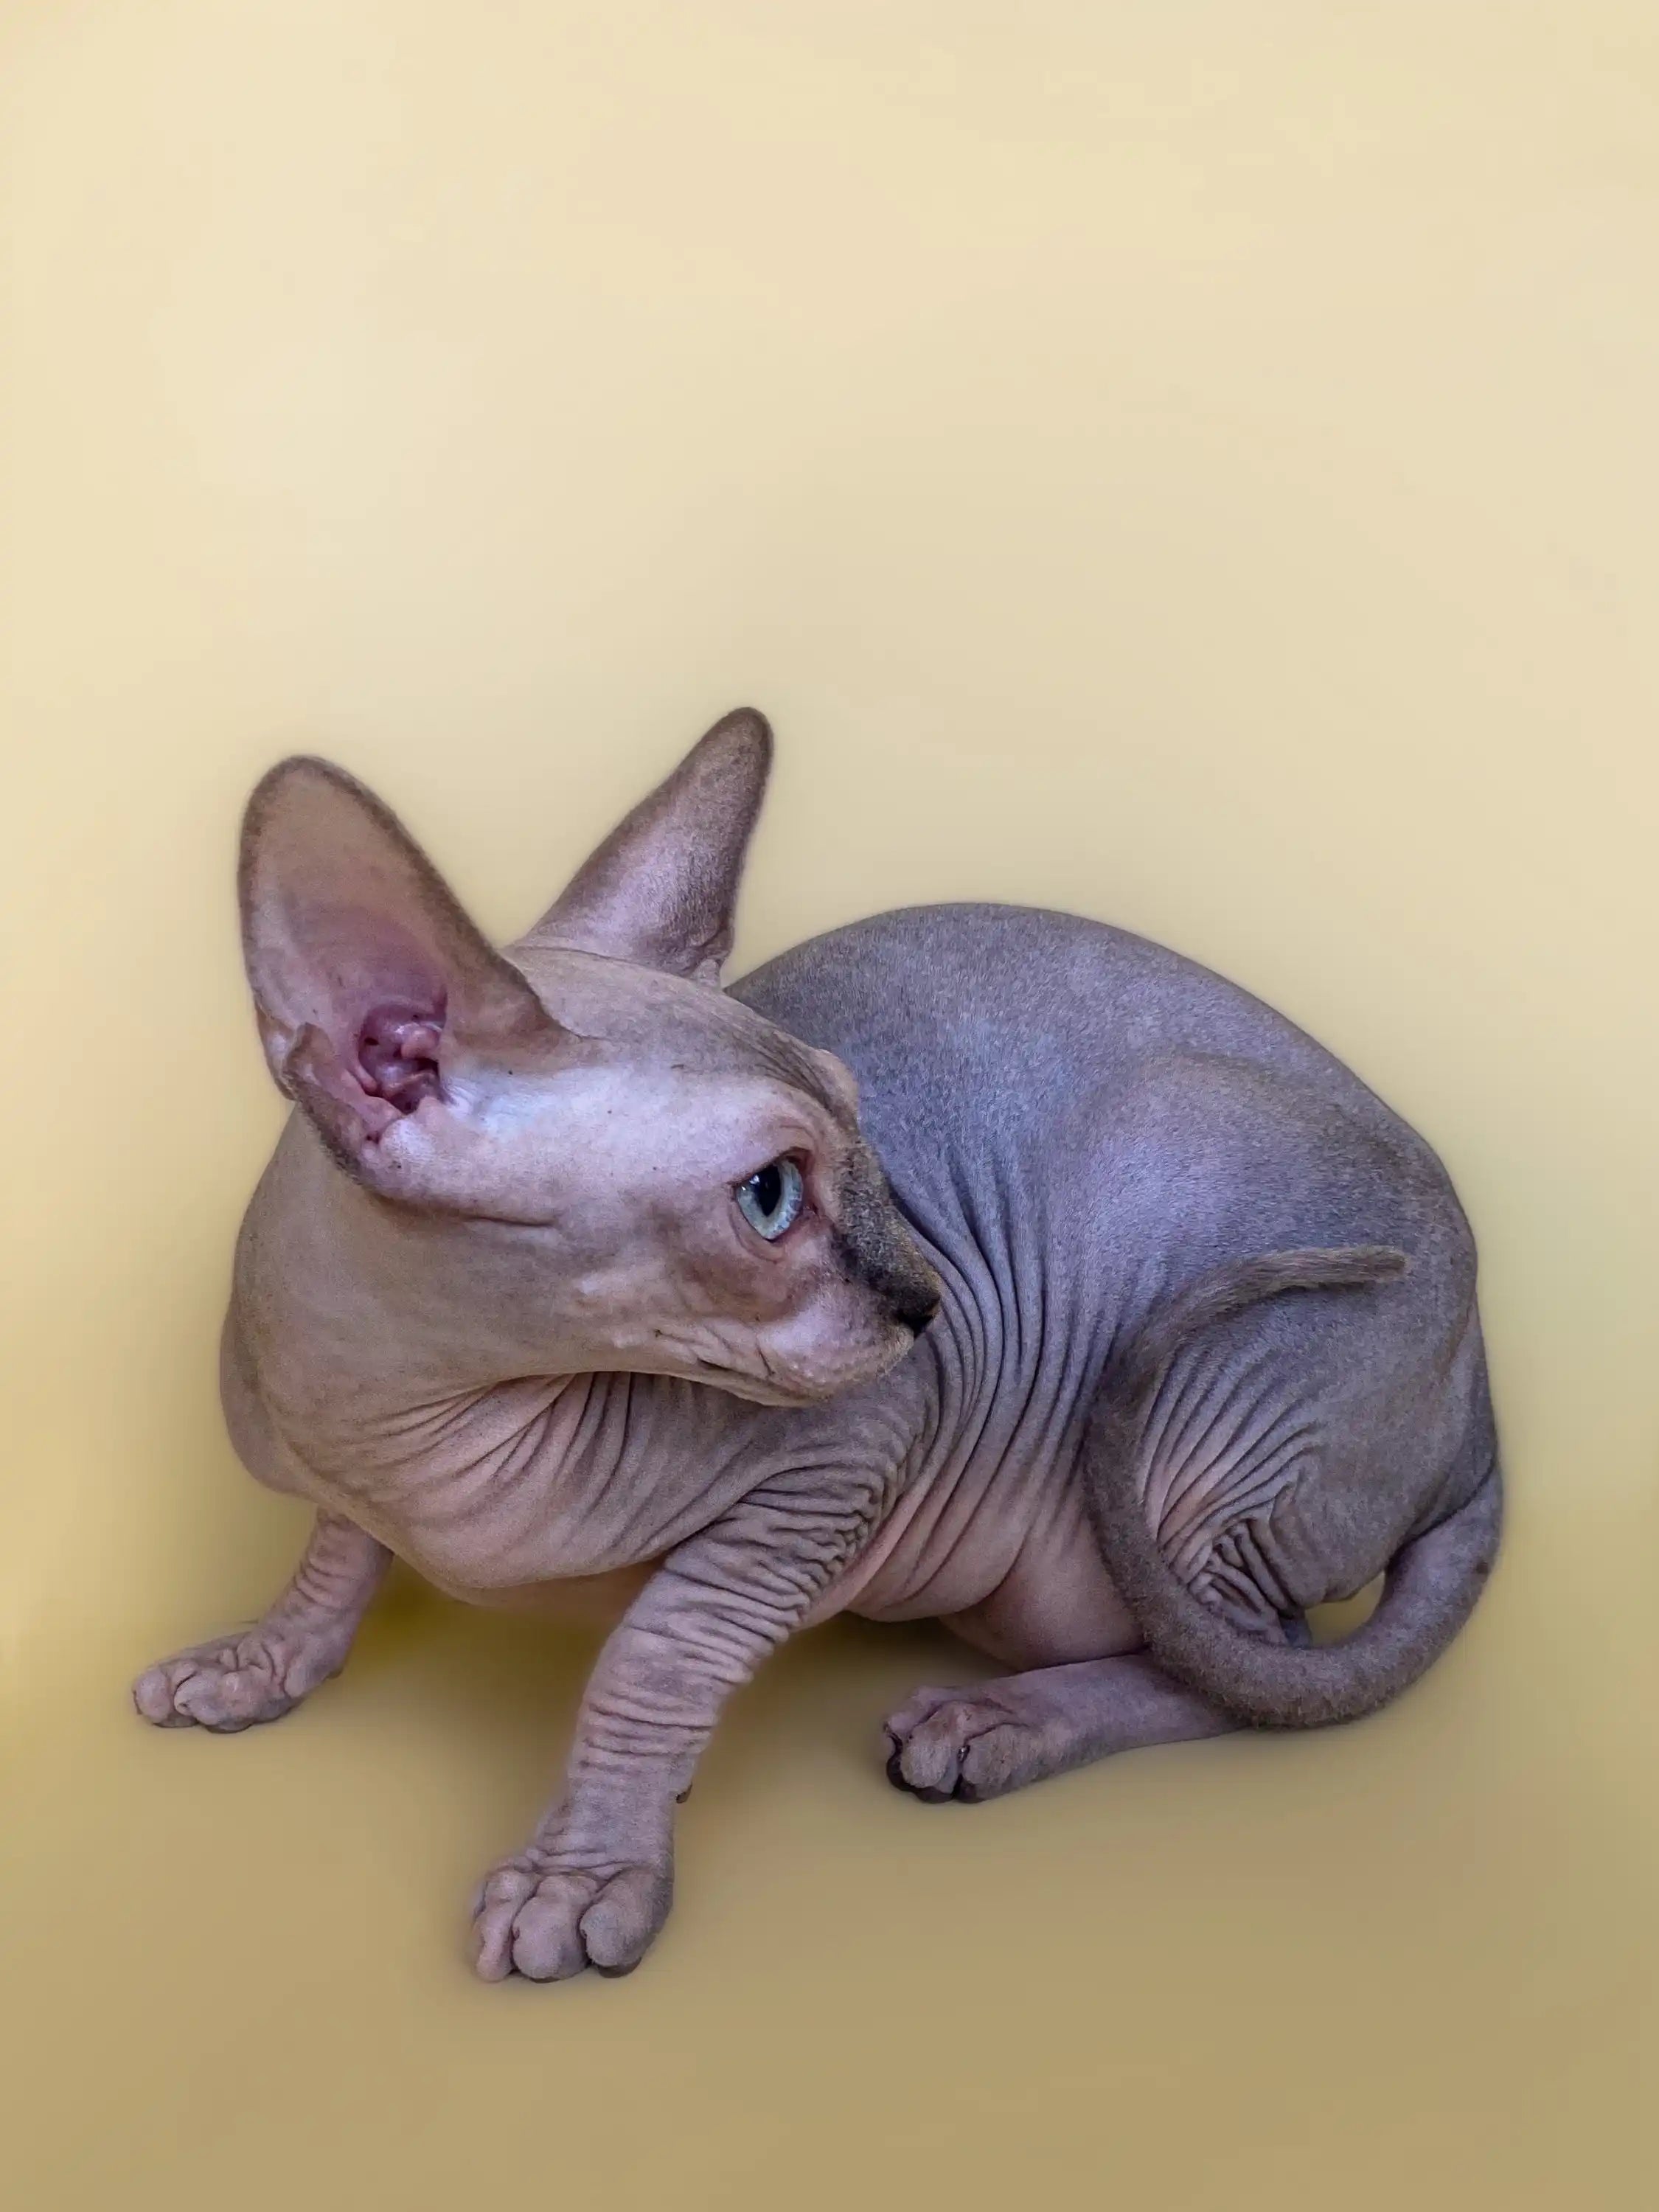 Hairless Sphynx Cats & Kittens for Sale Monty |Sphynx Kitten